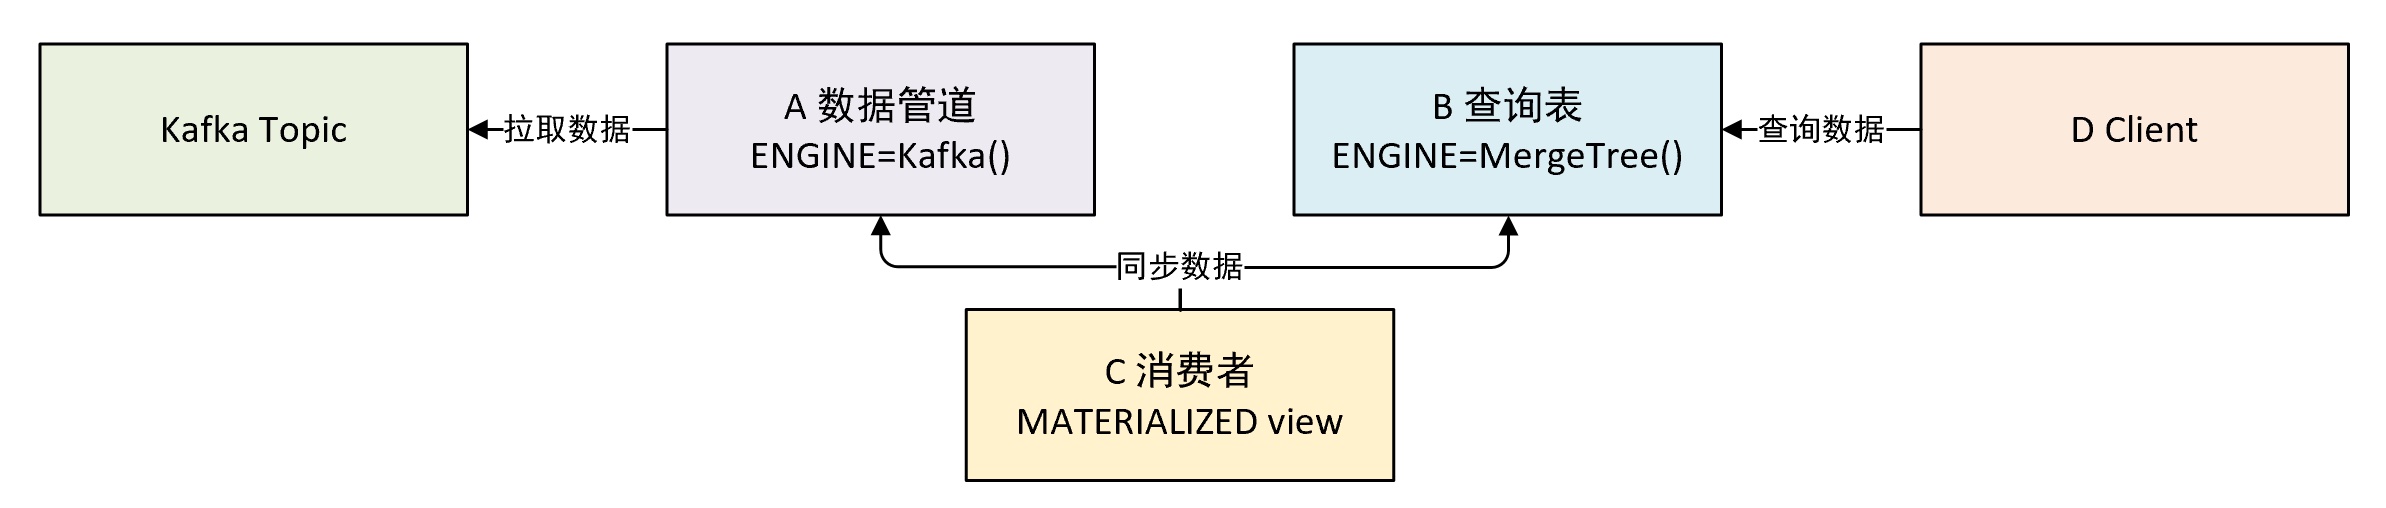 kafka表引擎作为数据管道示意图